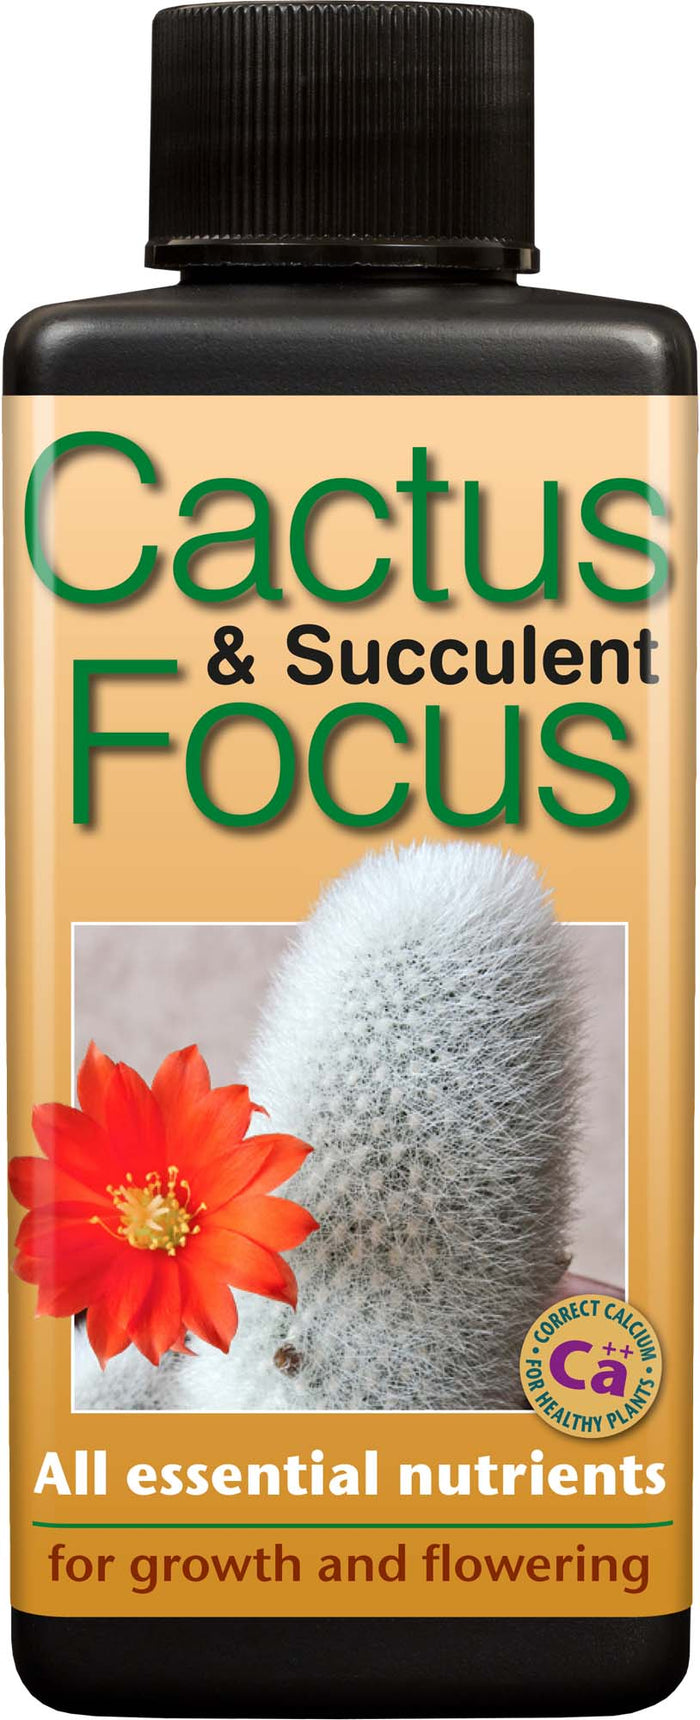 Cactus And Succulent Focus Feed